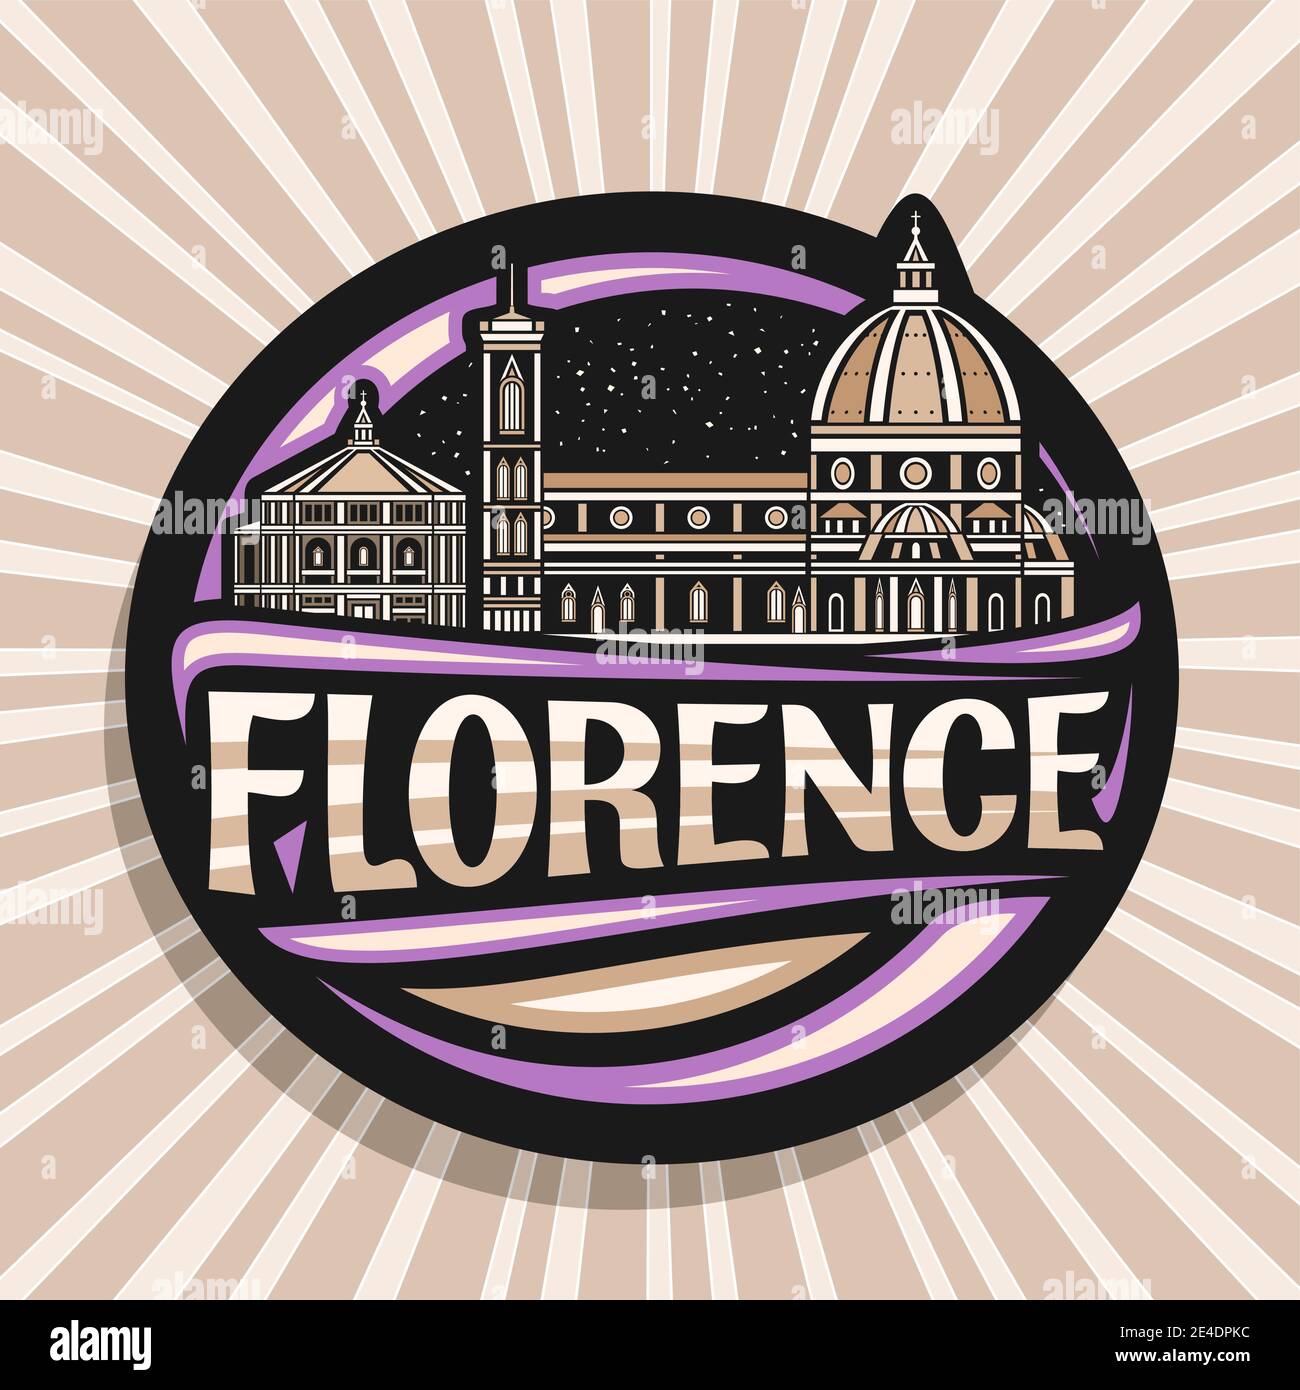 Vektor-Logo für Florenz, schwarz dekorativen Tag mit Umriss Illustration der historischen florenz Stadtbild auf Dämmerung Himmel Hintergrund, Design Tourist frid Stock Vektor